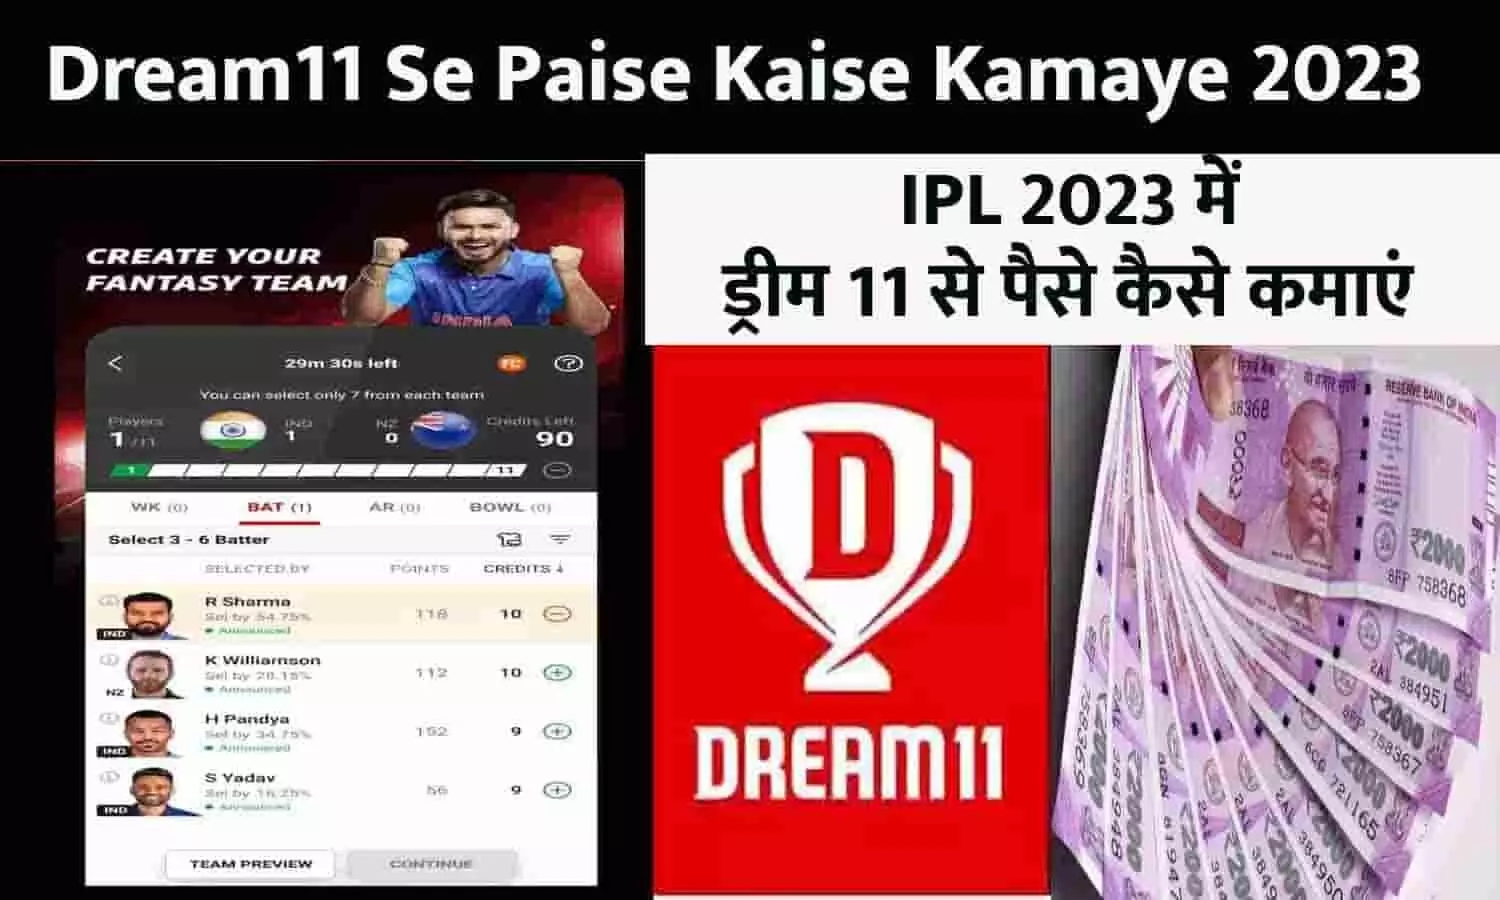 Dream11 Se Paise Kaise Kamaye 2023: IPL 2023 में ड्रीम 11 से पैसे कैसे कमाएं, ये है बेहतरीन Idea